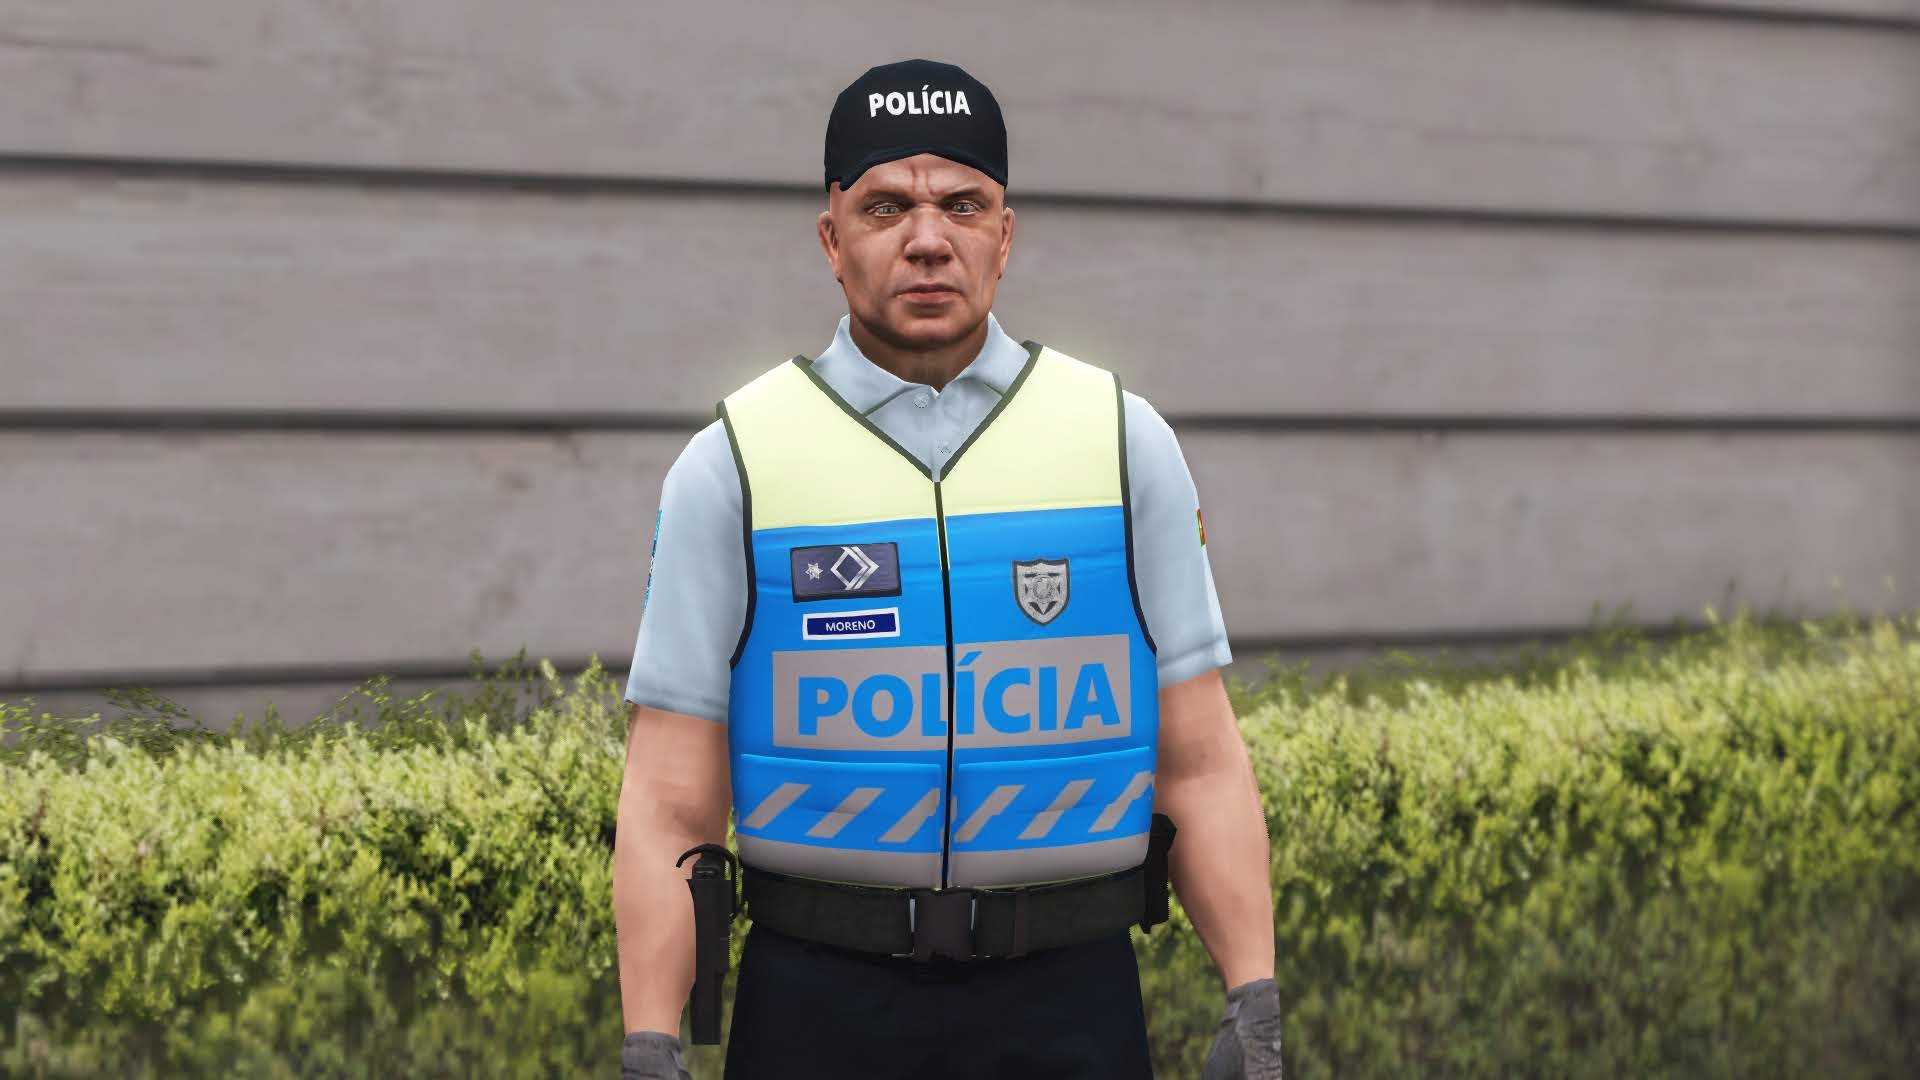 Farda PSP Polícia Segurança Pública - GTA5-Mods.com